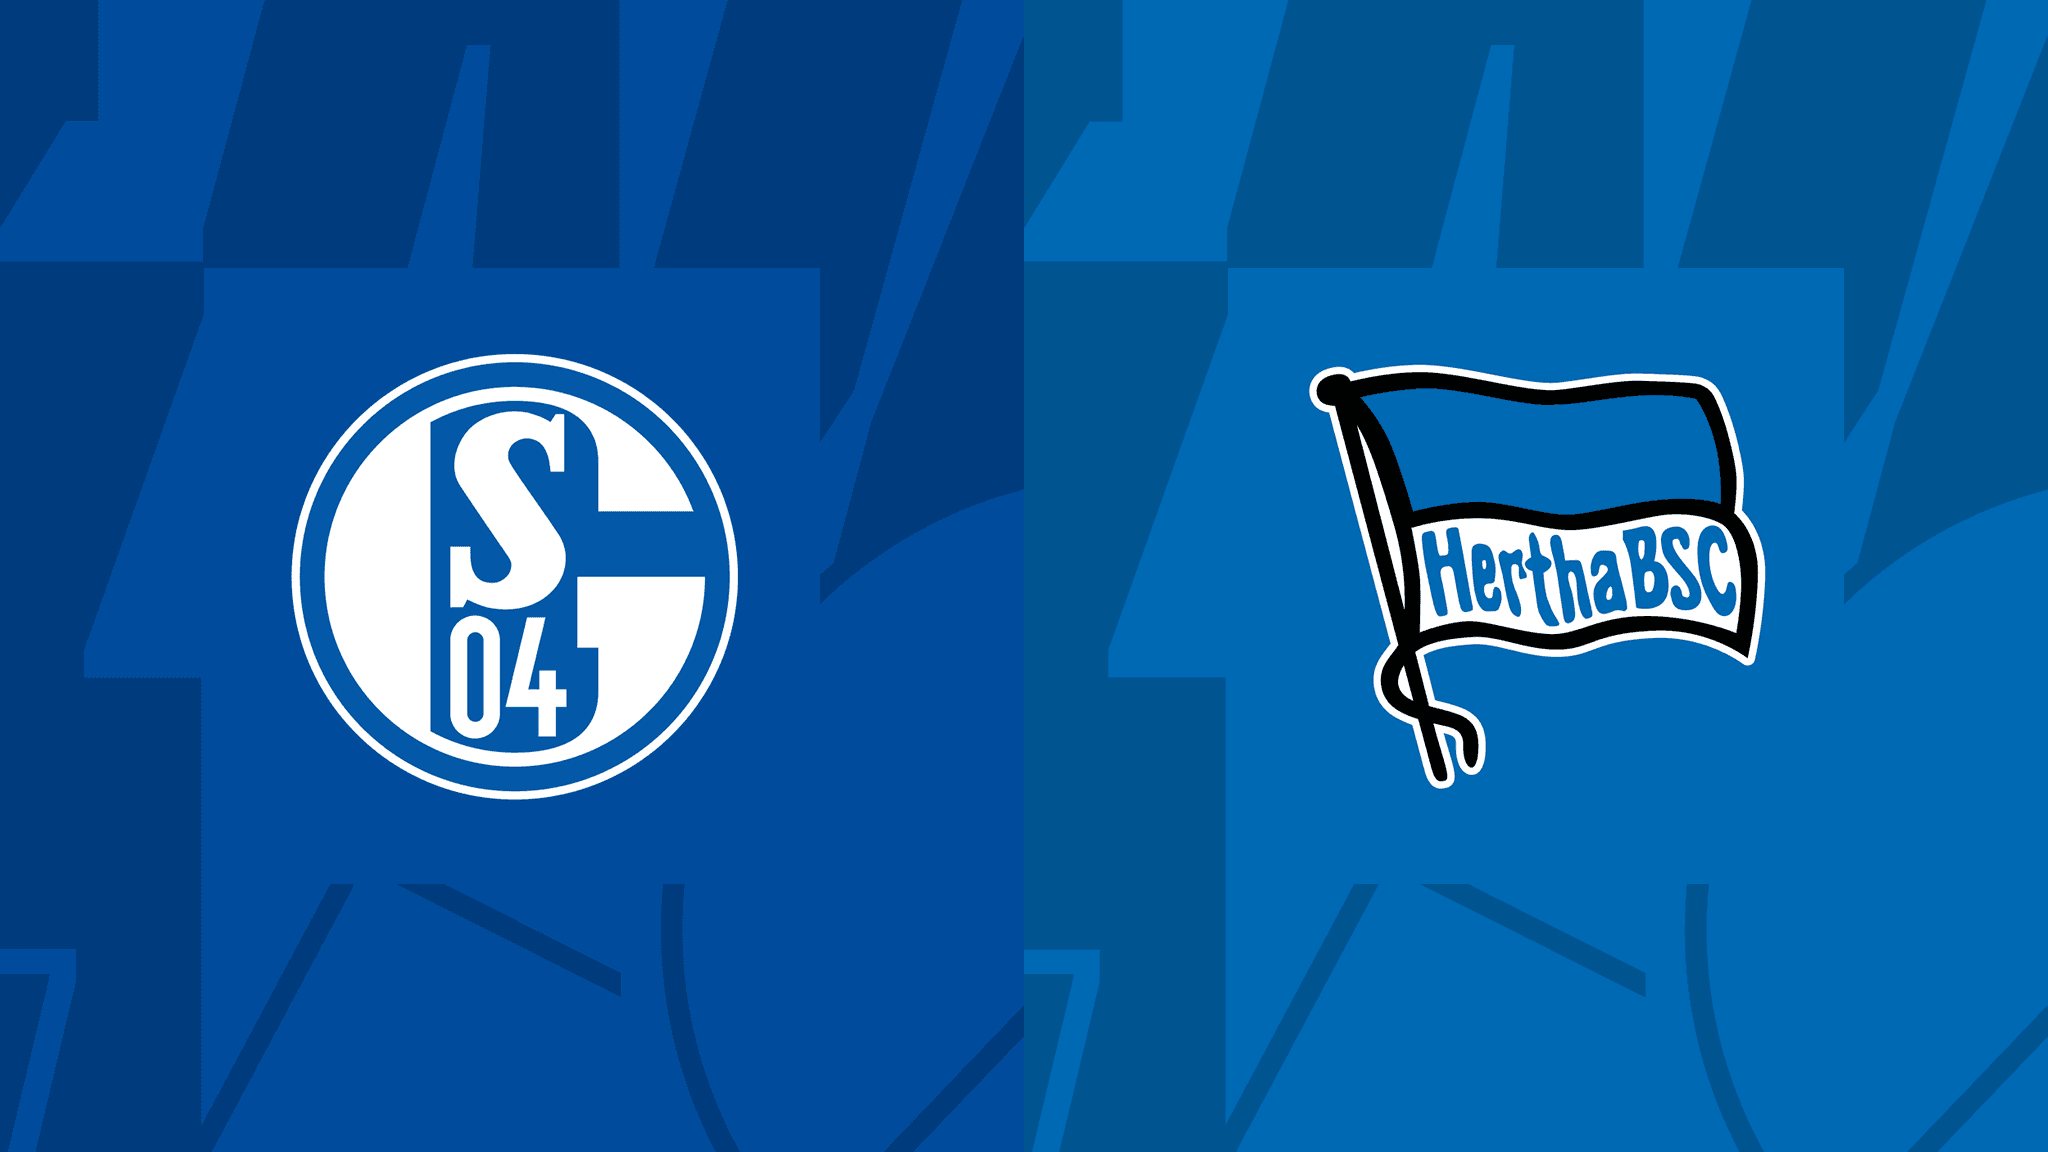 الدوري الألماني : مباراة شالكه 04 وهيرتا برلين اليوم و القنوات الناقلة Schalke vs Hertha Berlin